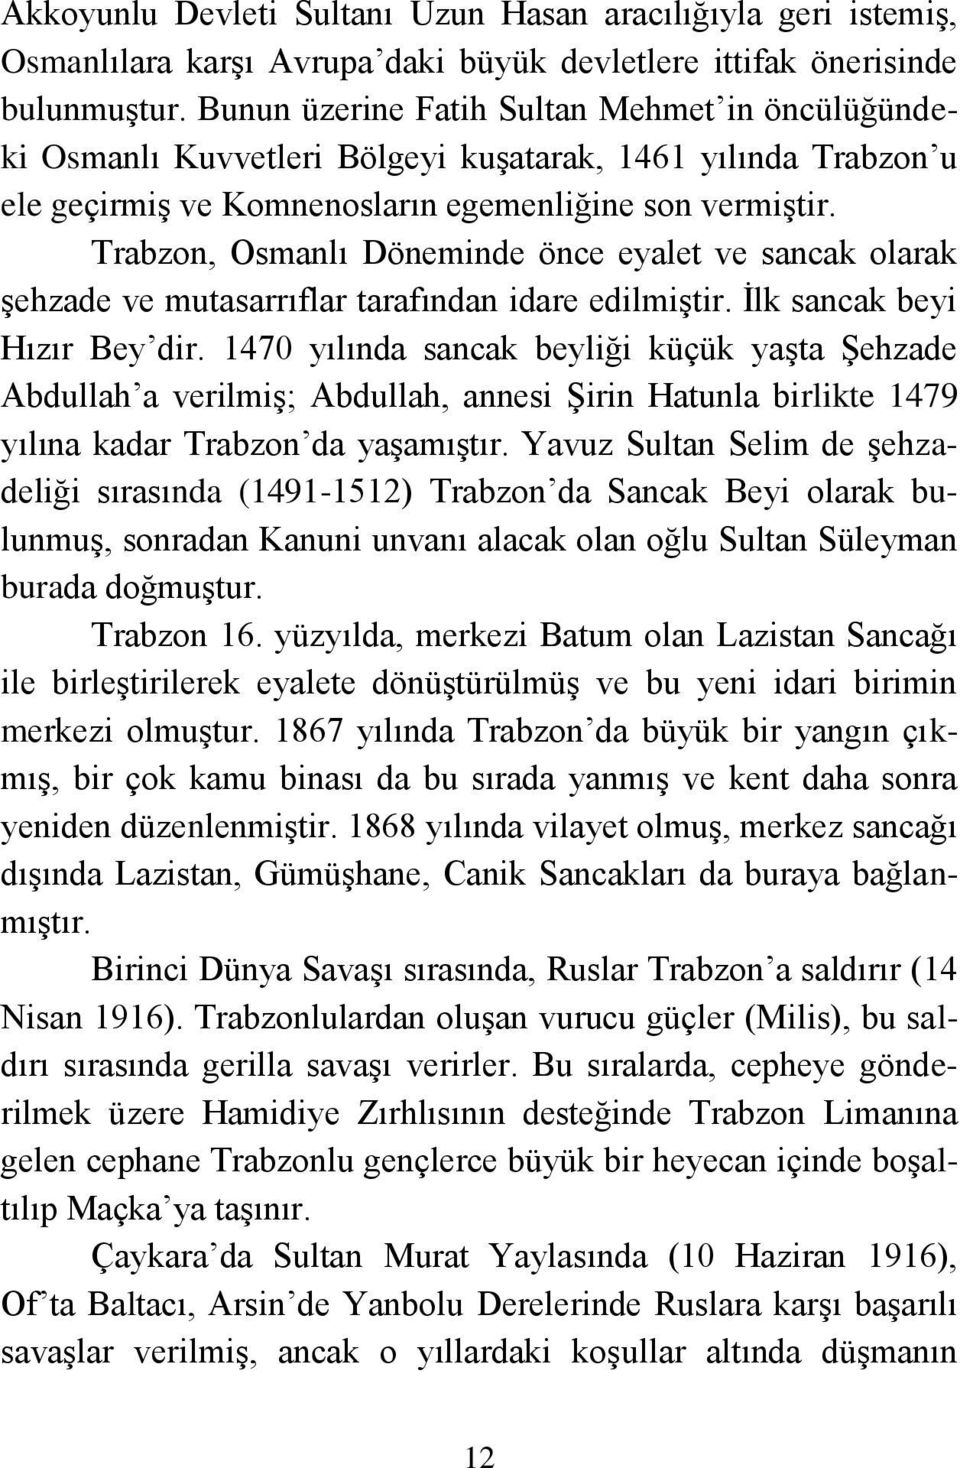 Trabzon, Osmanlı Döneminde önce eyalet ve sancak olarak Ģehzade ve mutasarrıflar tarafından idare edilmiģtir. Ġlk sancak beyi Hızır Bey dir.